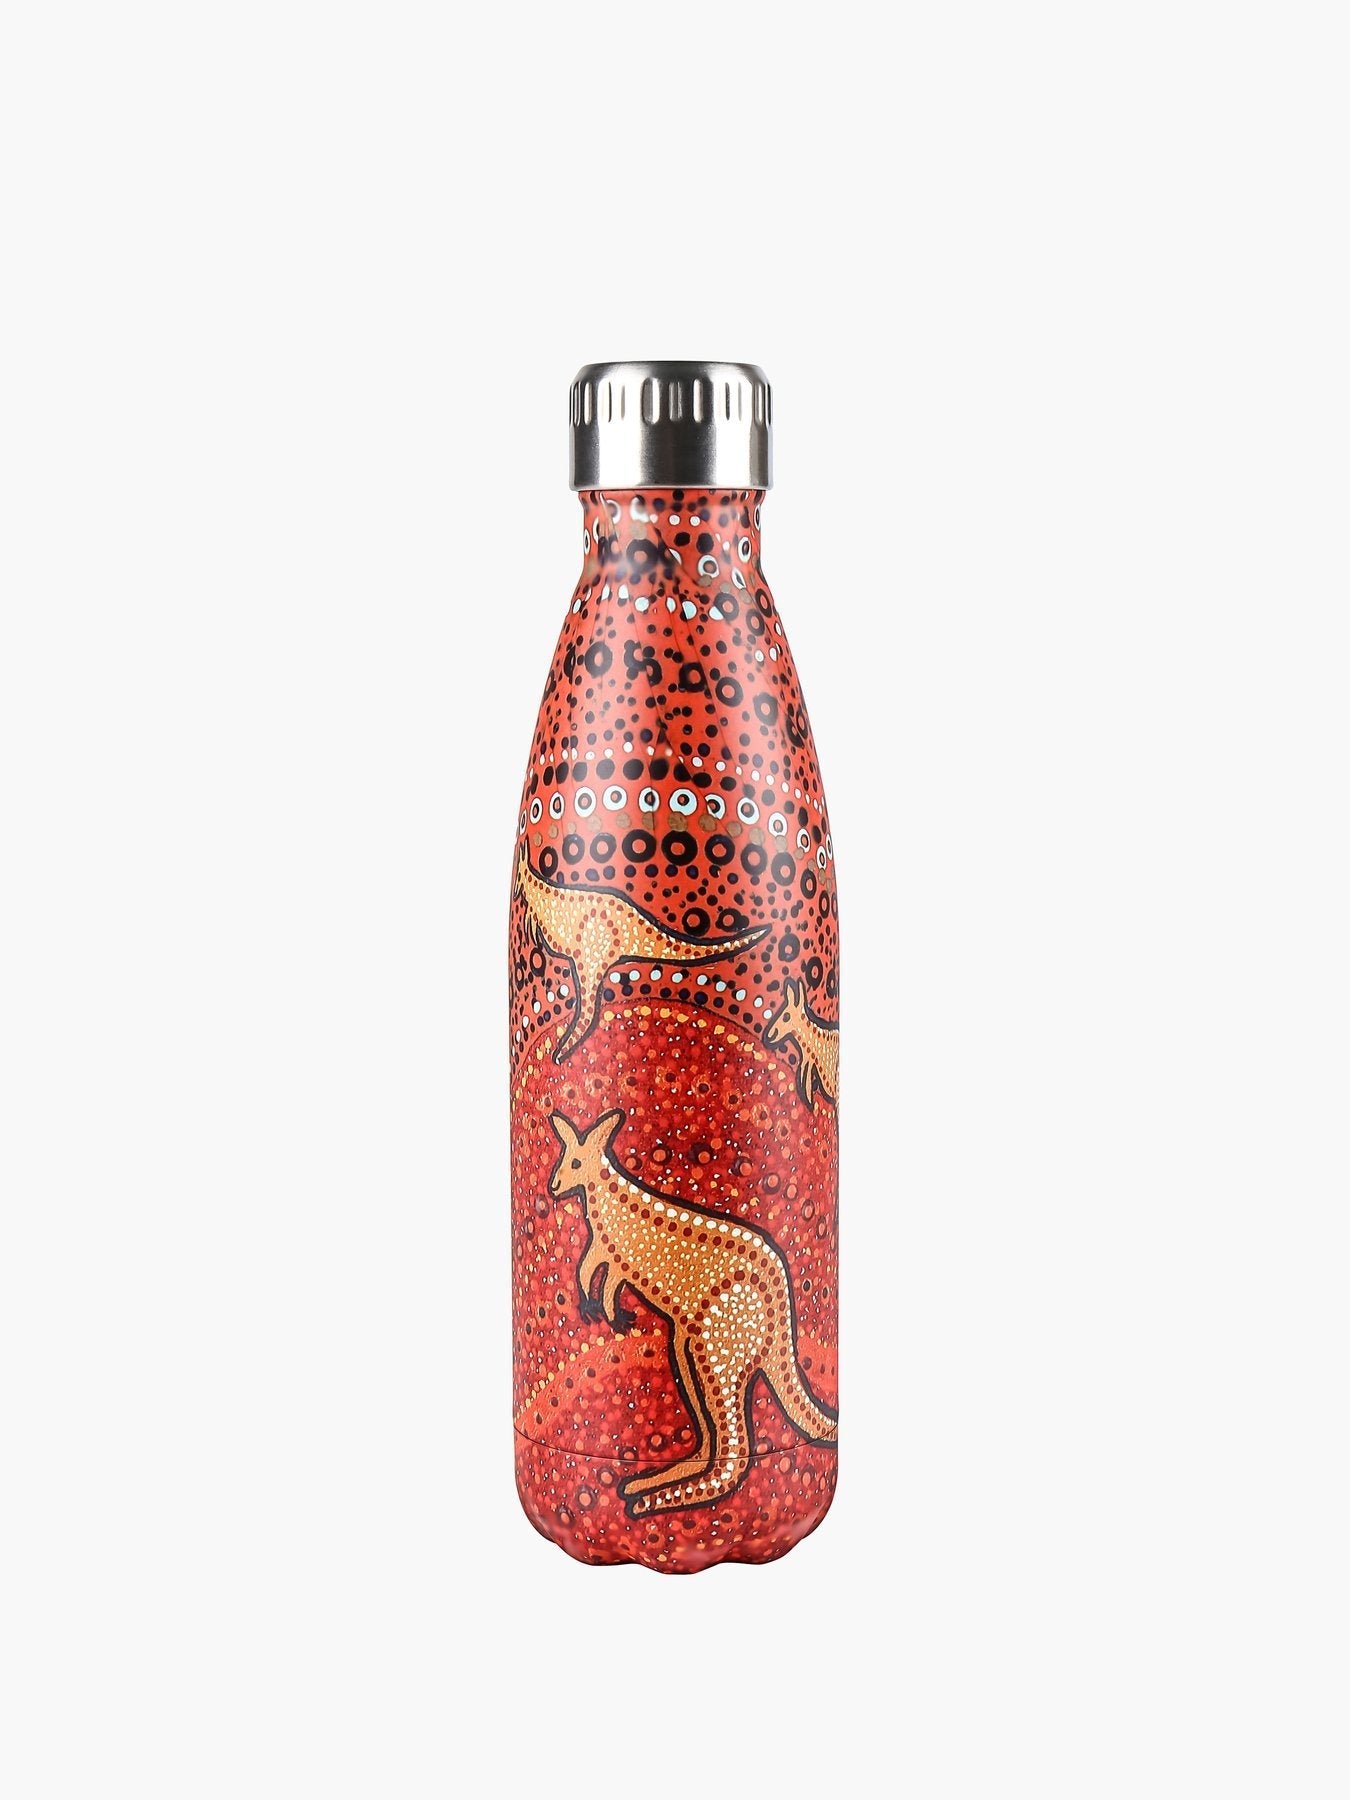 Kangaroo sunset Stainless Steel Water Bottle